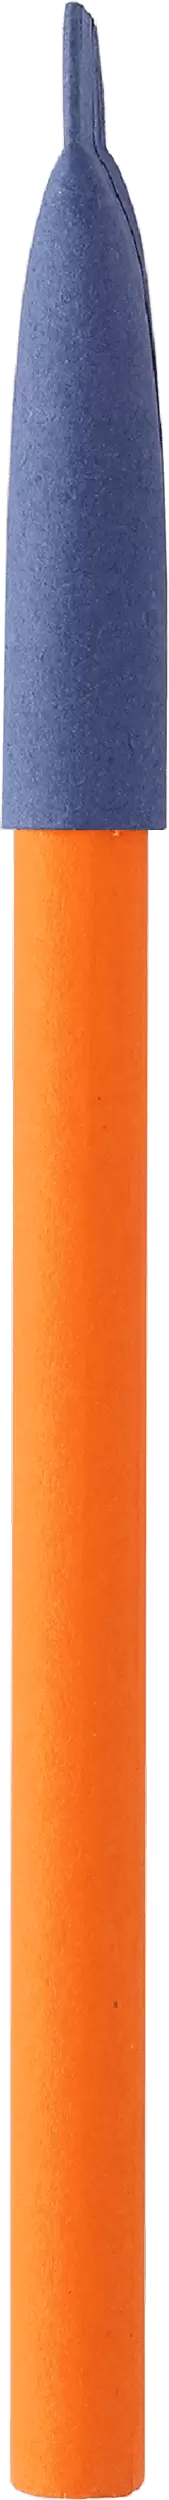 Ручка KRAFT MIX Оранжевая с синим 3011-05-01